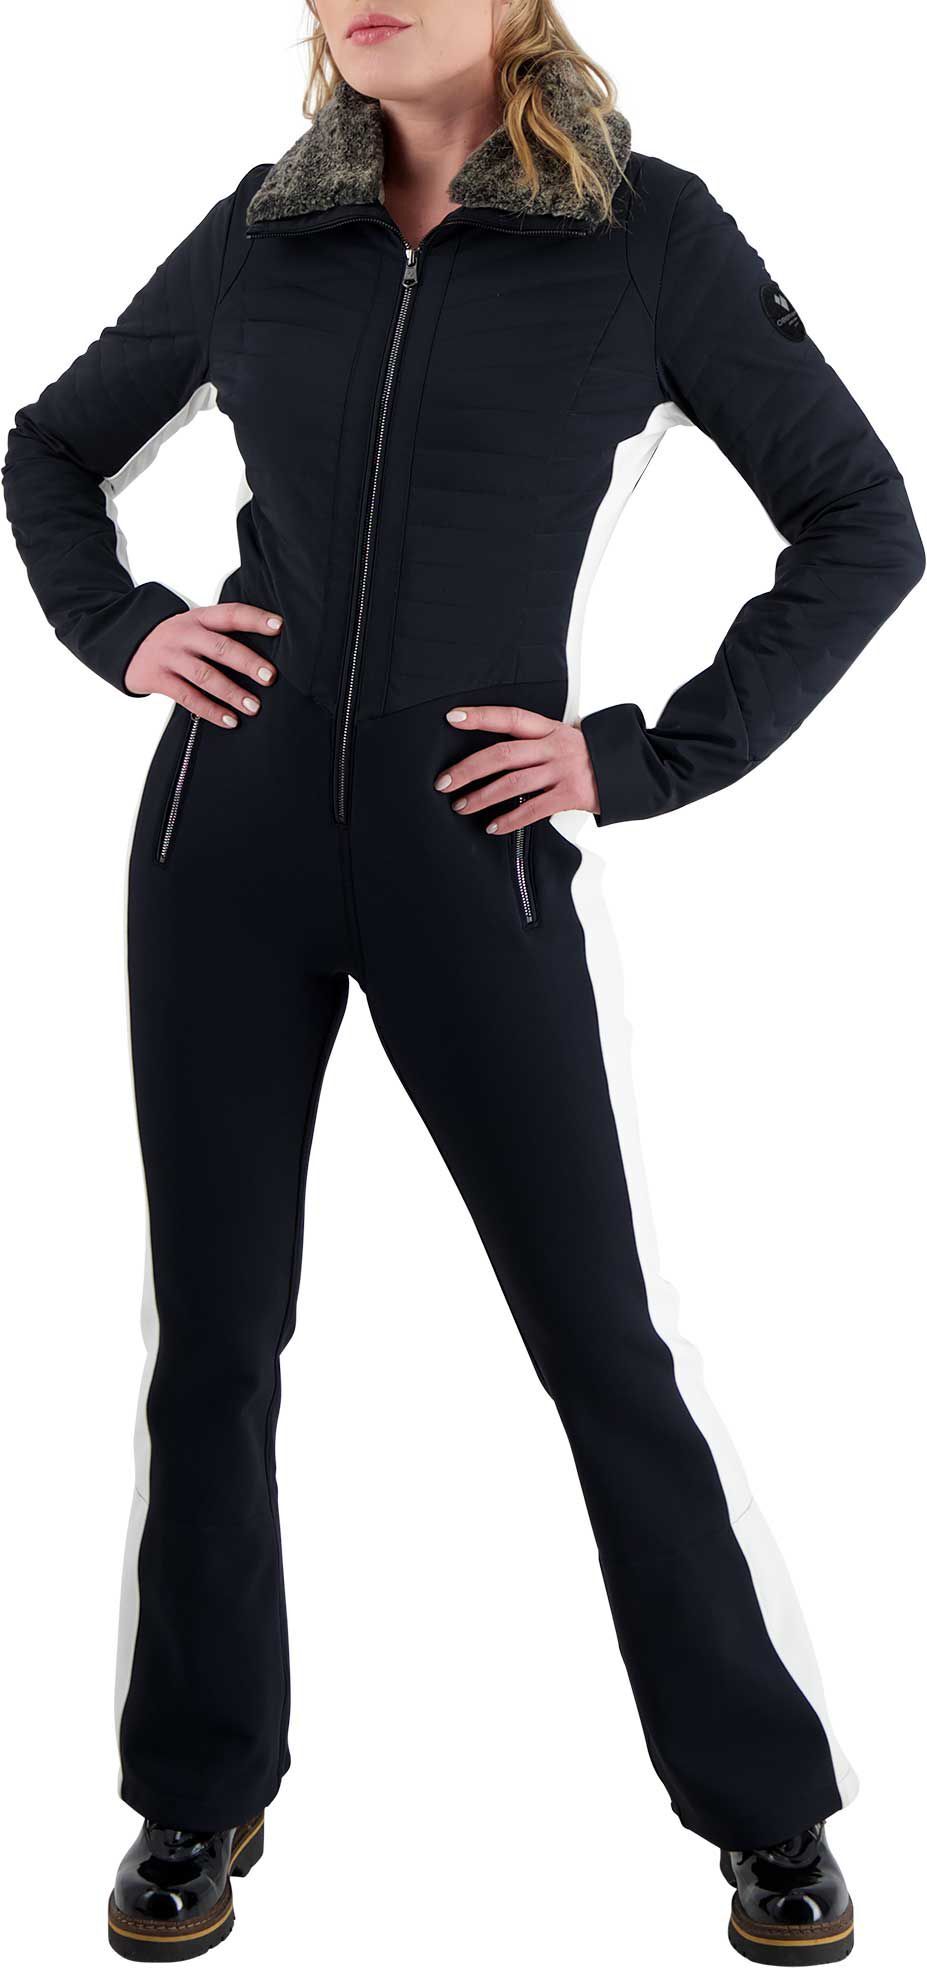 Photos - Ski Wear Obermeyer Women's Katze Winter Suit, Size 2, Black 20obewwktzstxxxxxapo